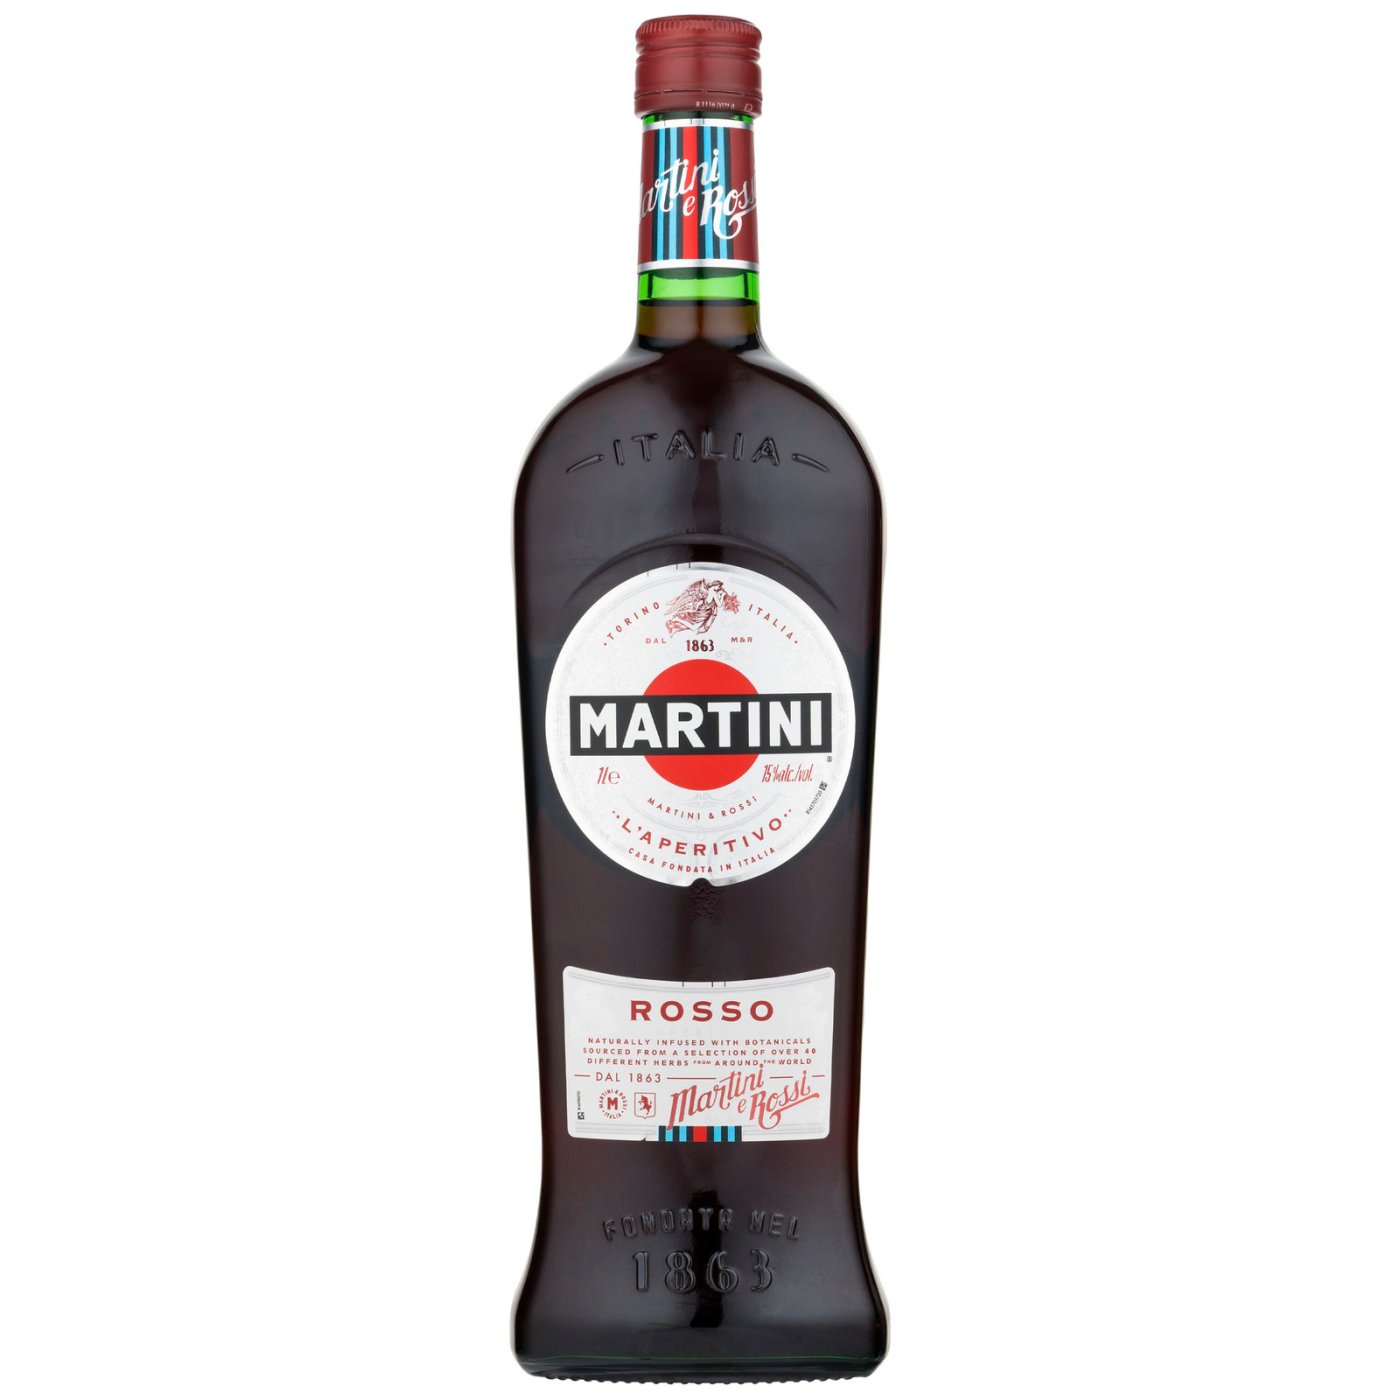 Martini - Rosso 1 liter